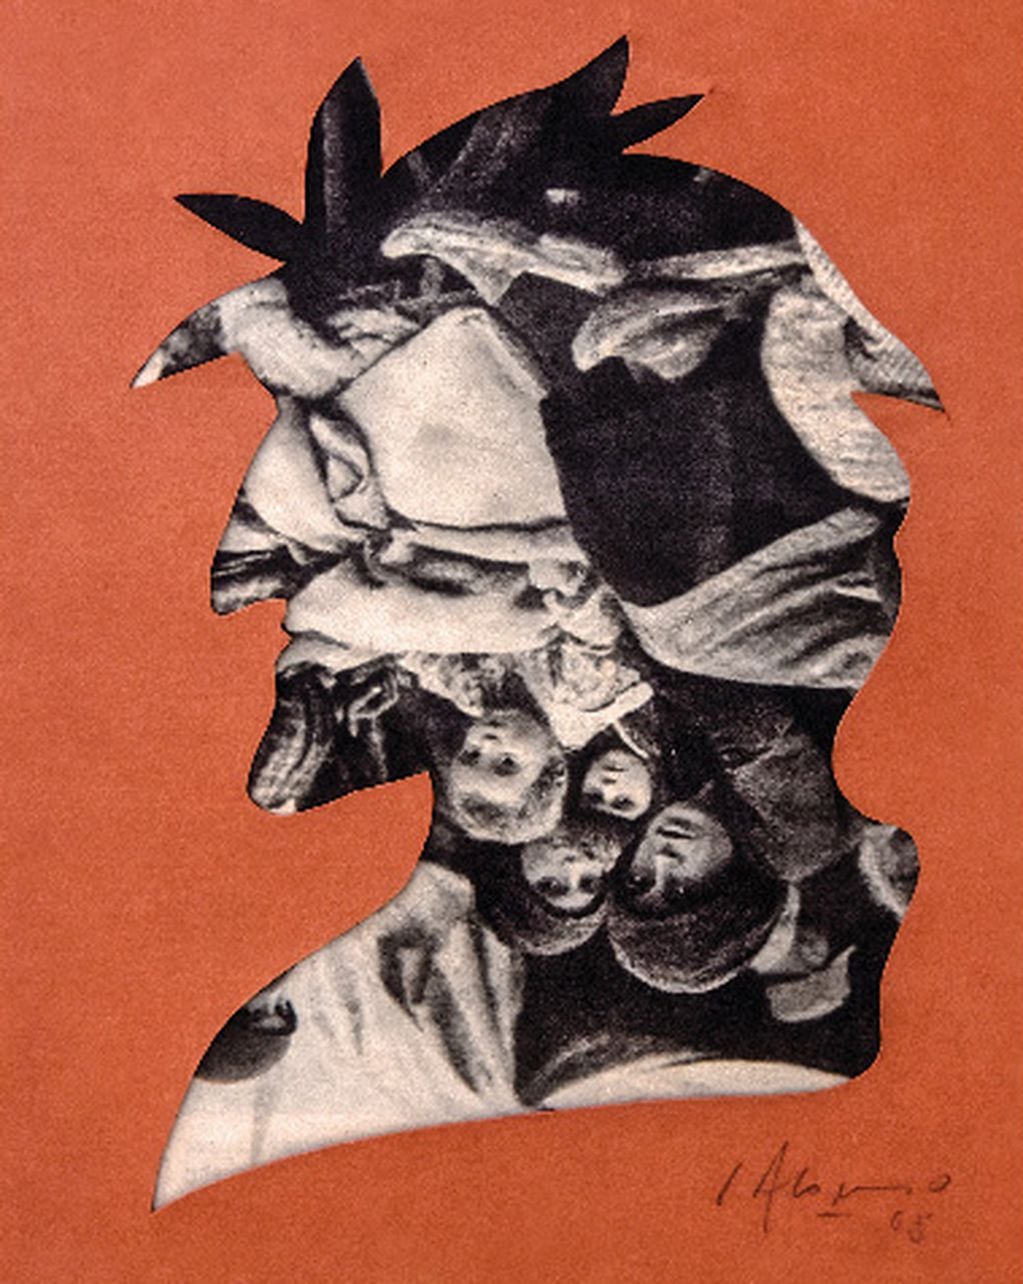 Una figura que se repite es el perfil de Dante, intervenido de diferentes formas como este collage.